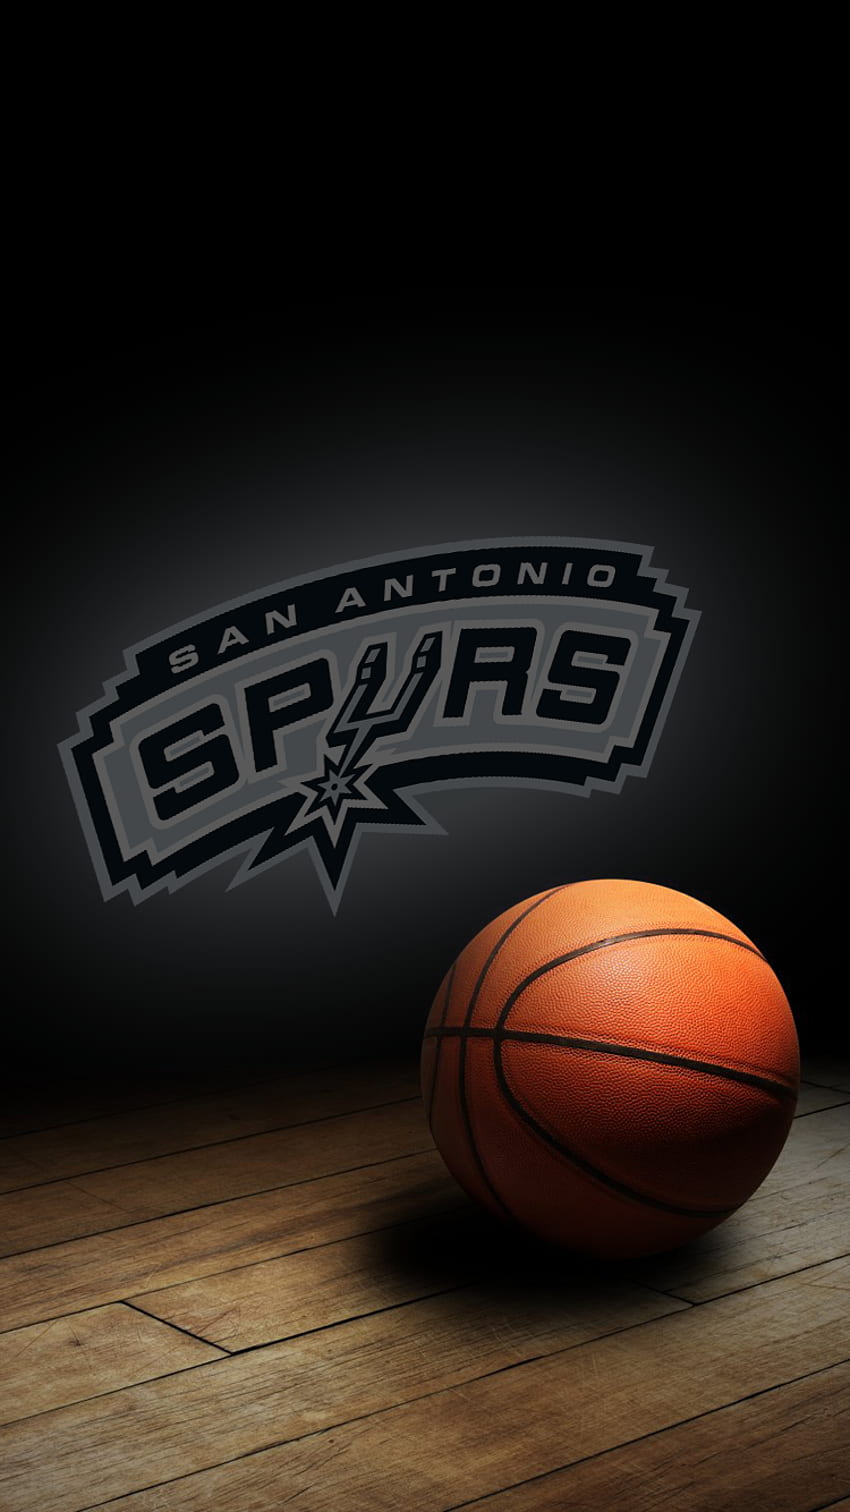 iPhone - iPhone 6 Sports Thread, San Antonio Spurs Papel de parede de celular HD